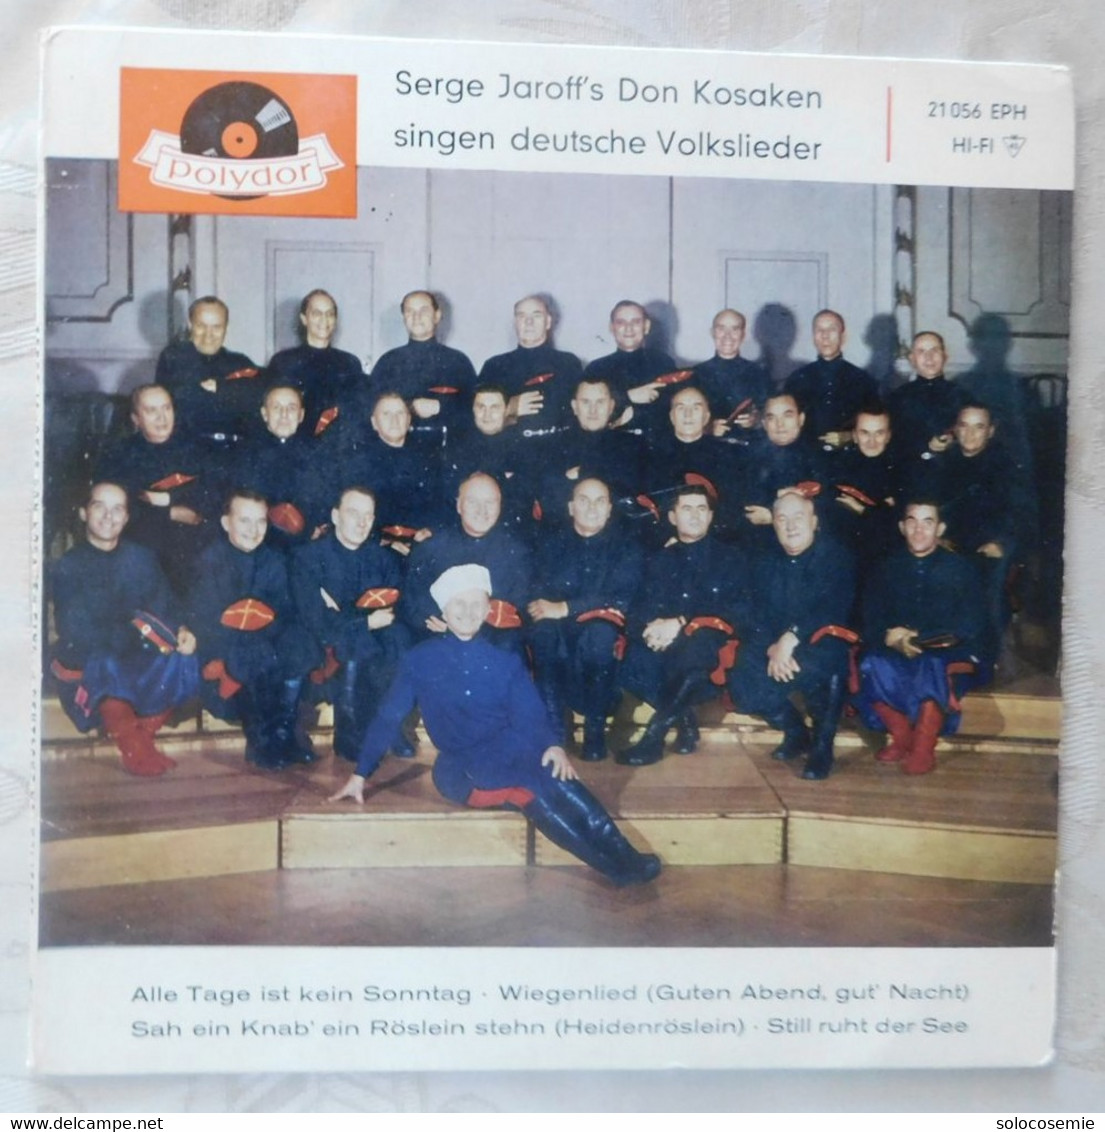 45 Giri Disco In Vinile: Serge Jaroff's Don Kosaken Singen Deutsche Volksilieder  - Polydor  21056 EPH - Other - German Music